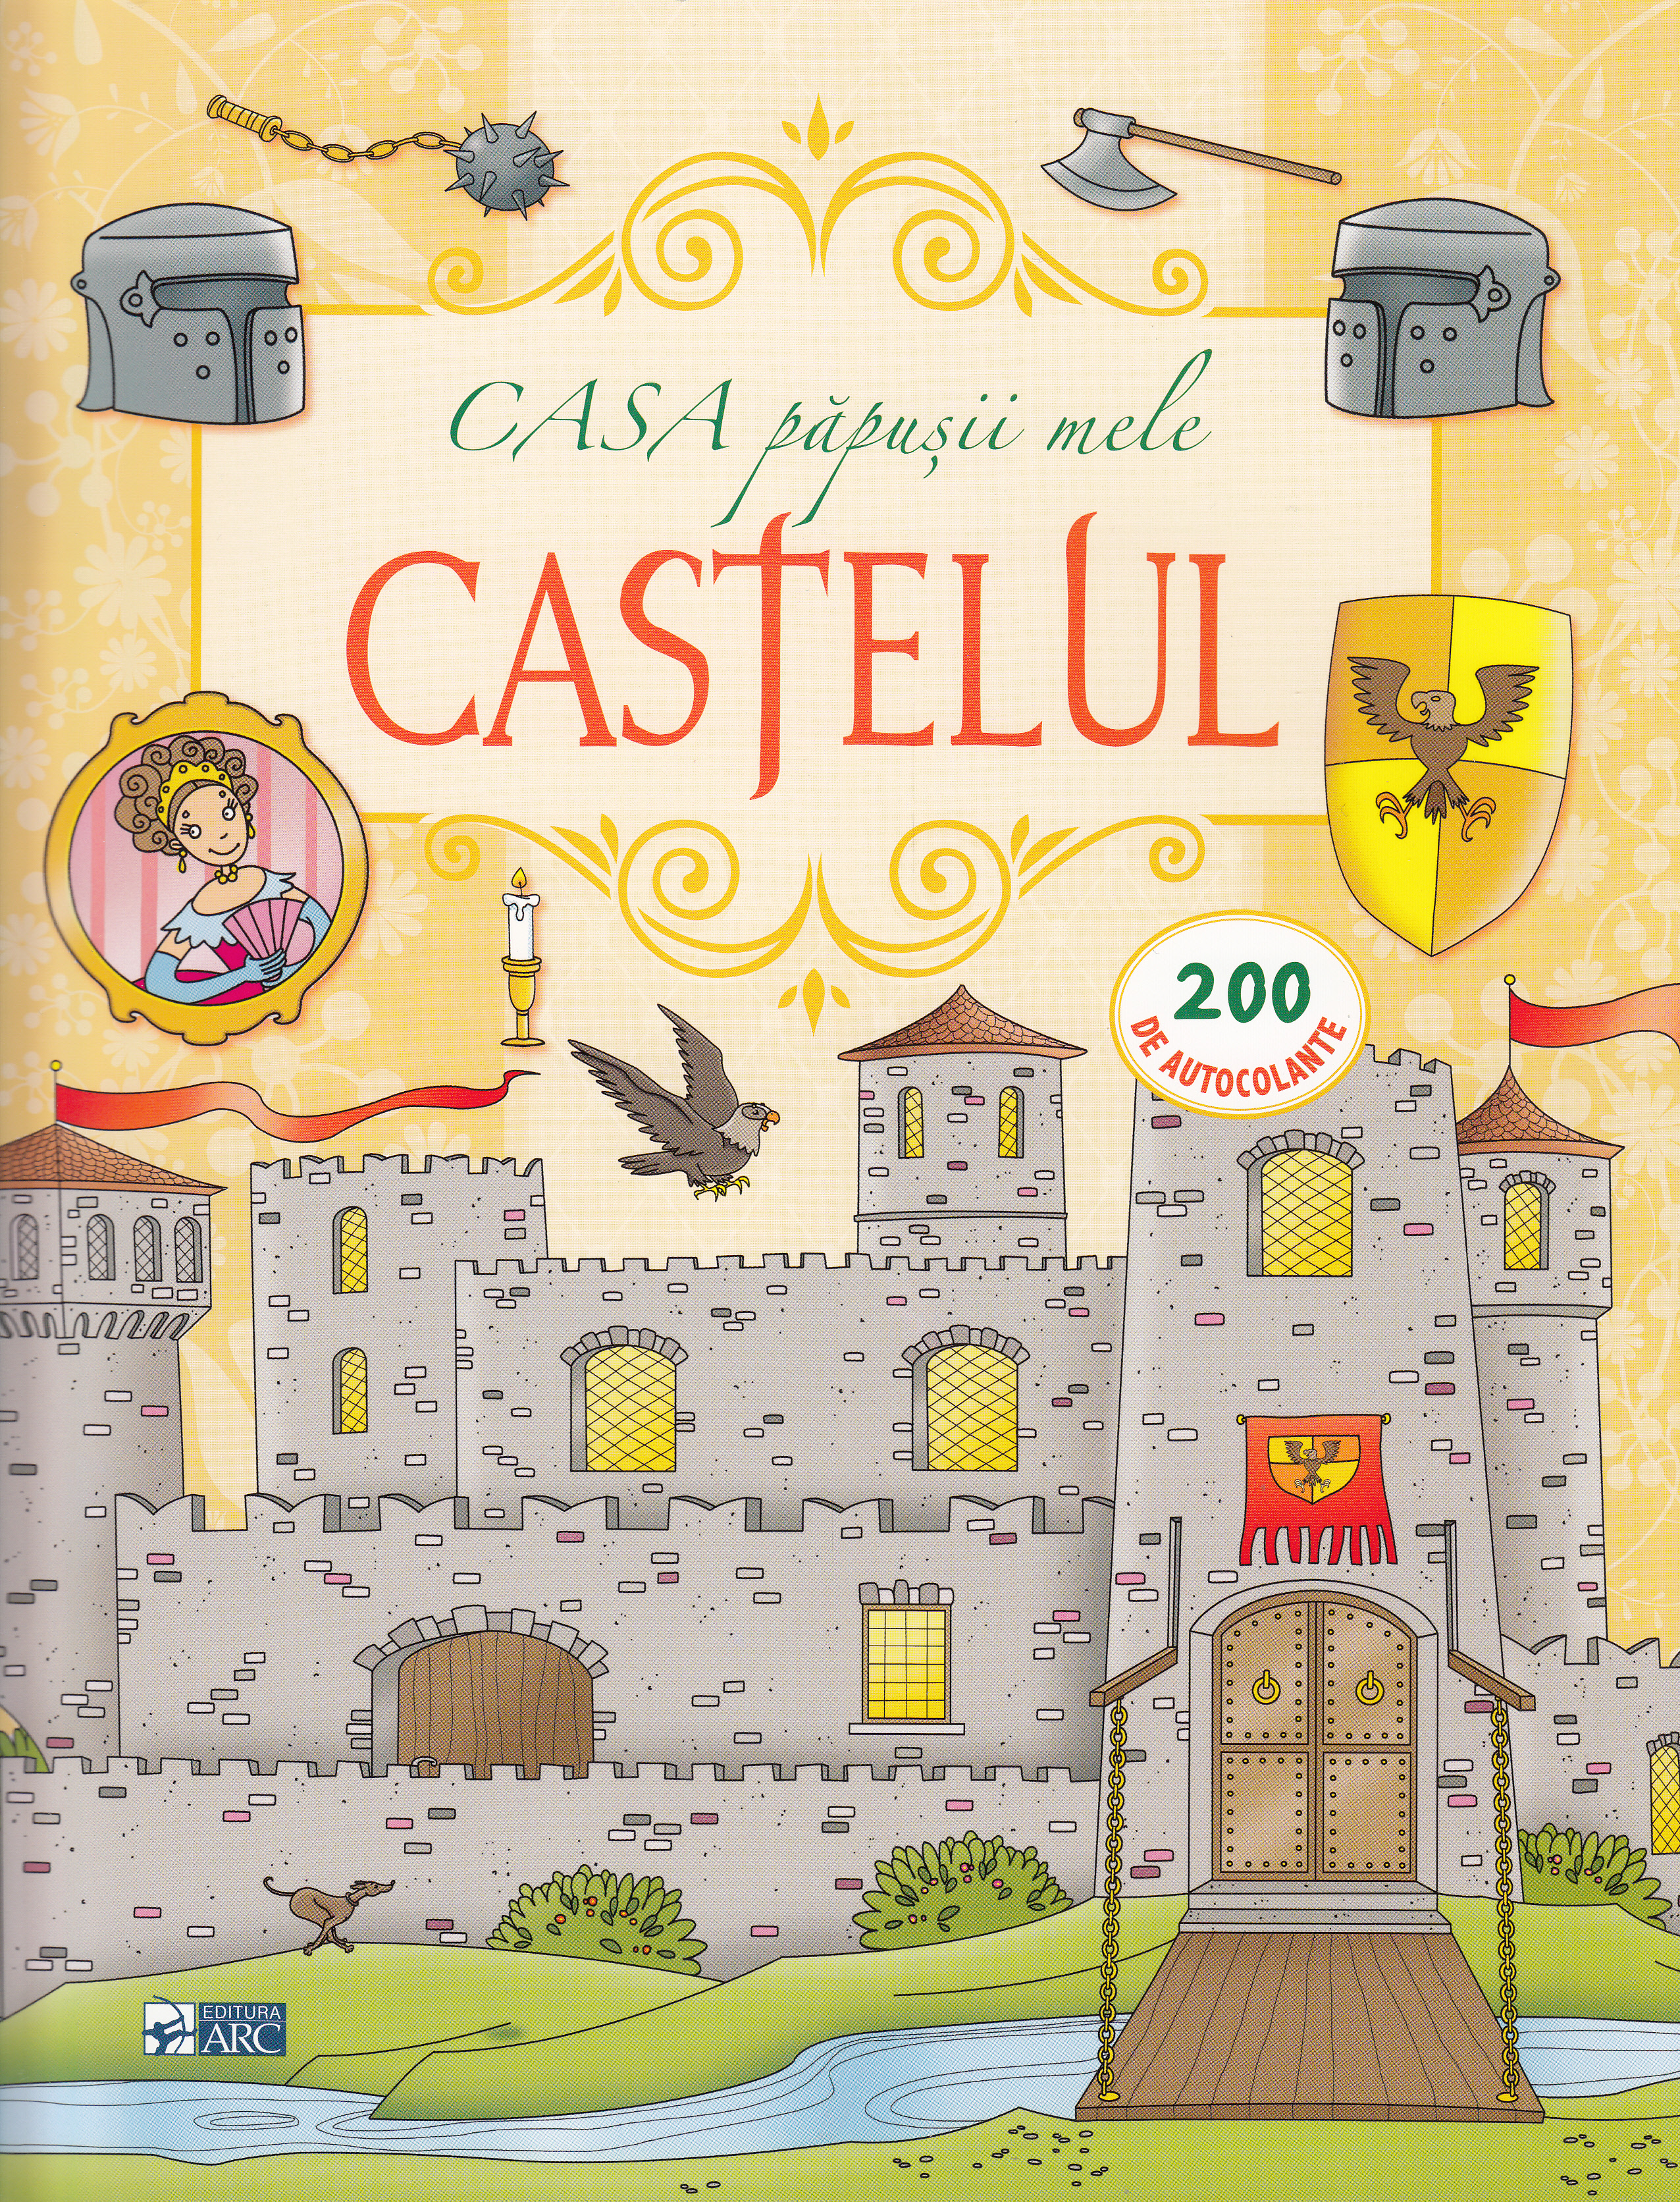 Casa papusii mele: Castelul